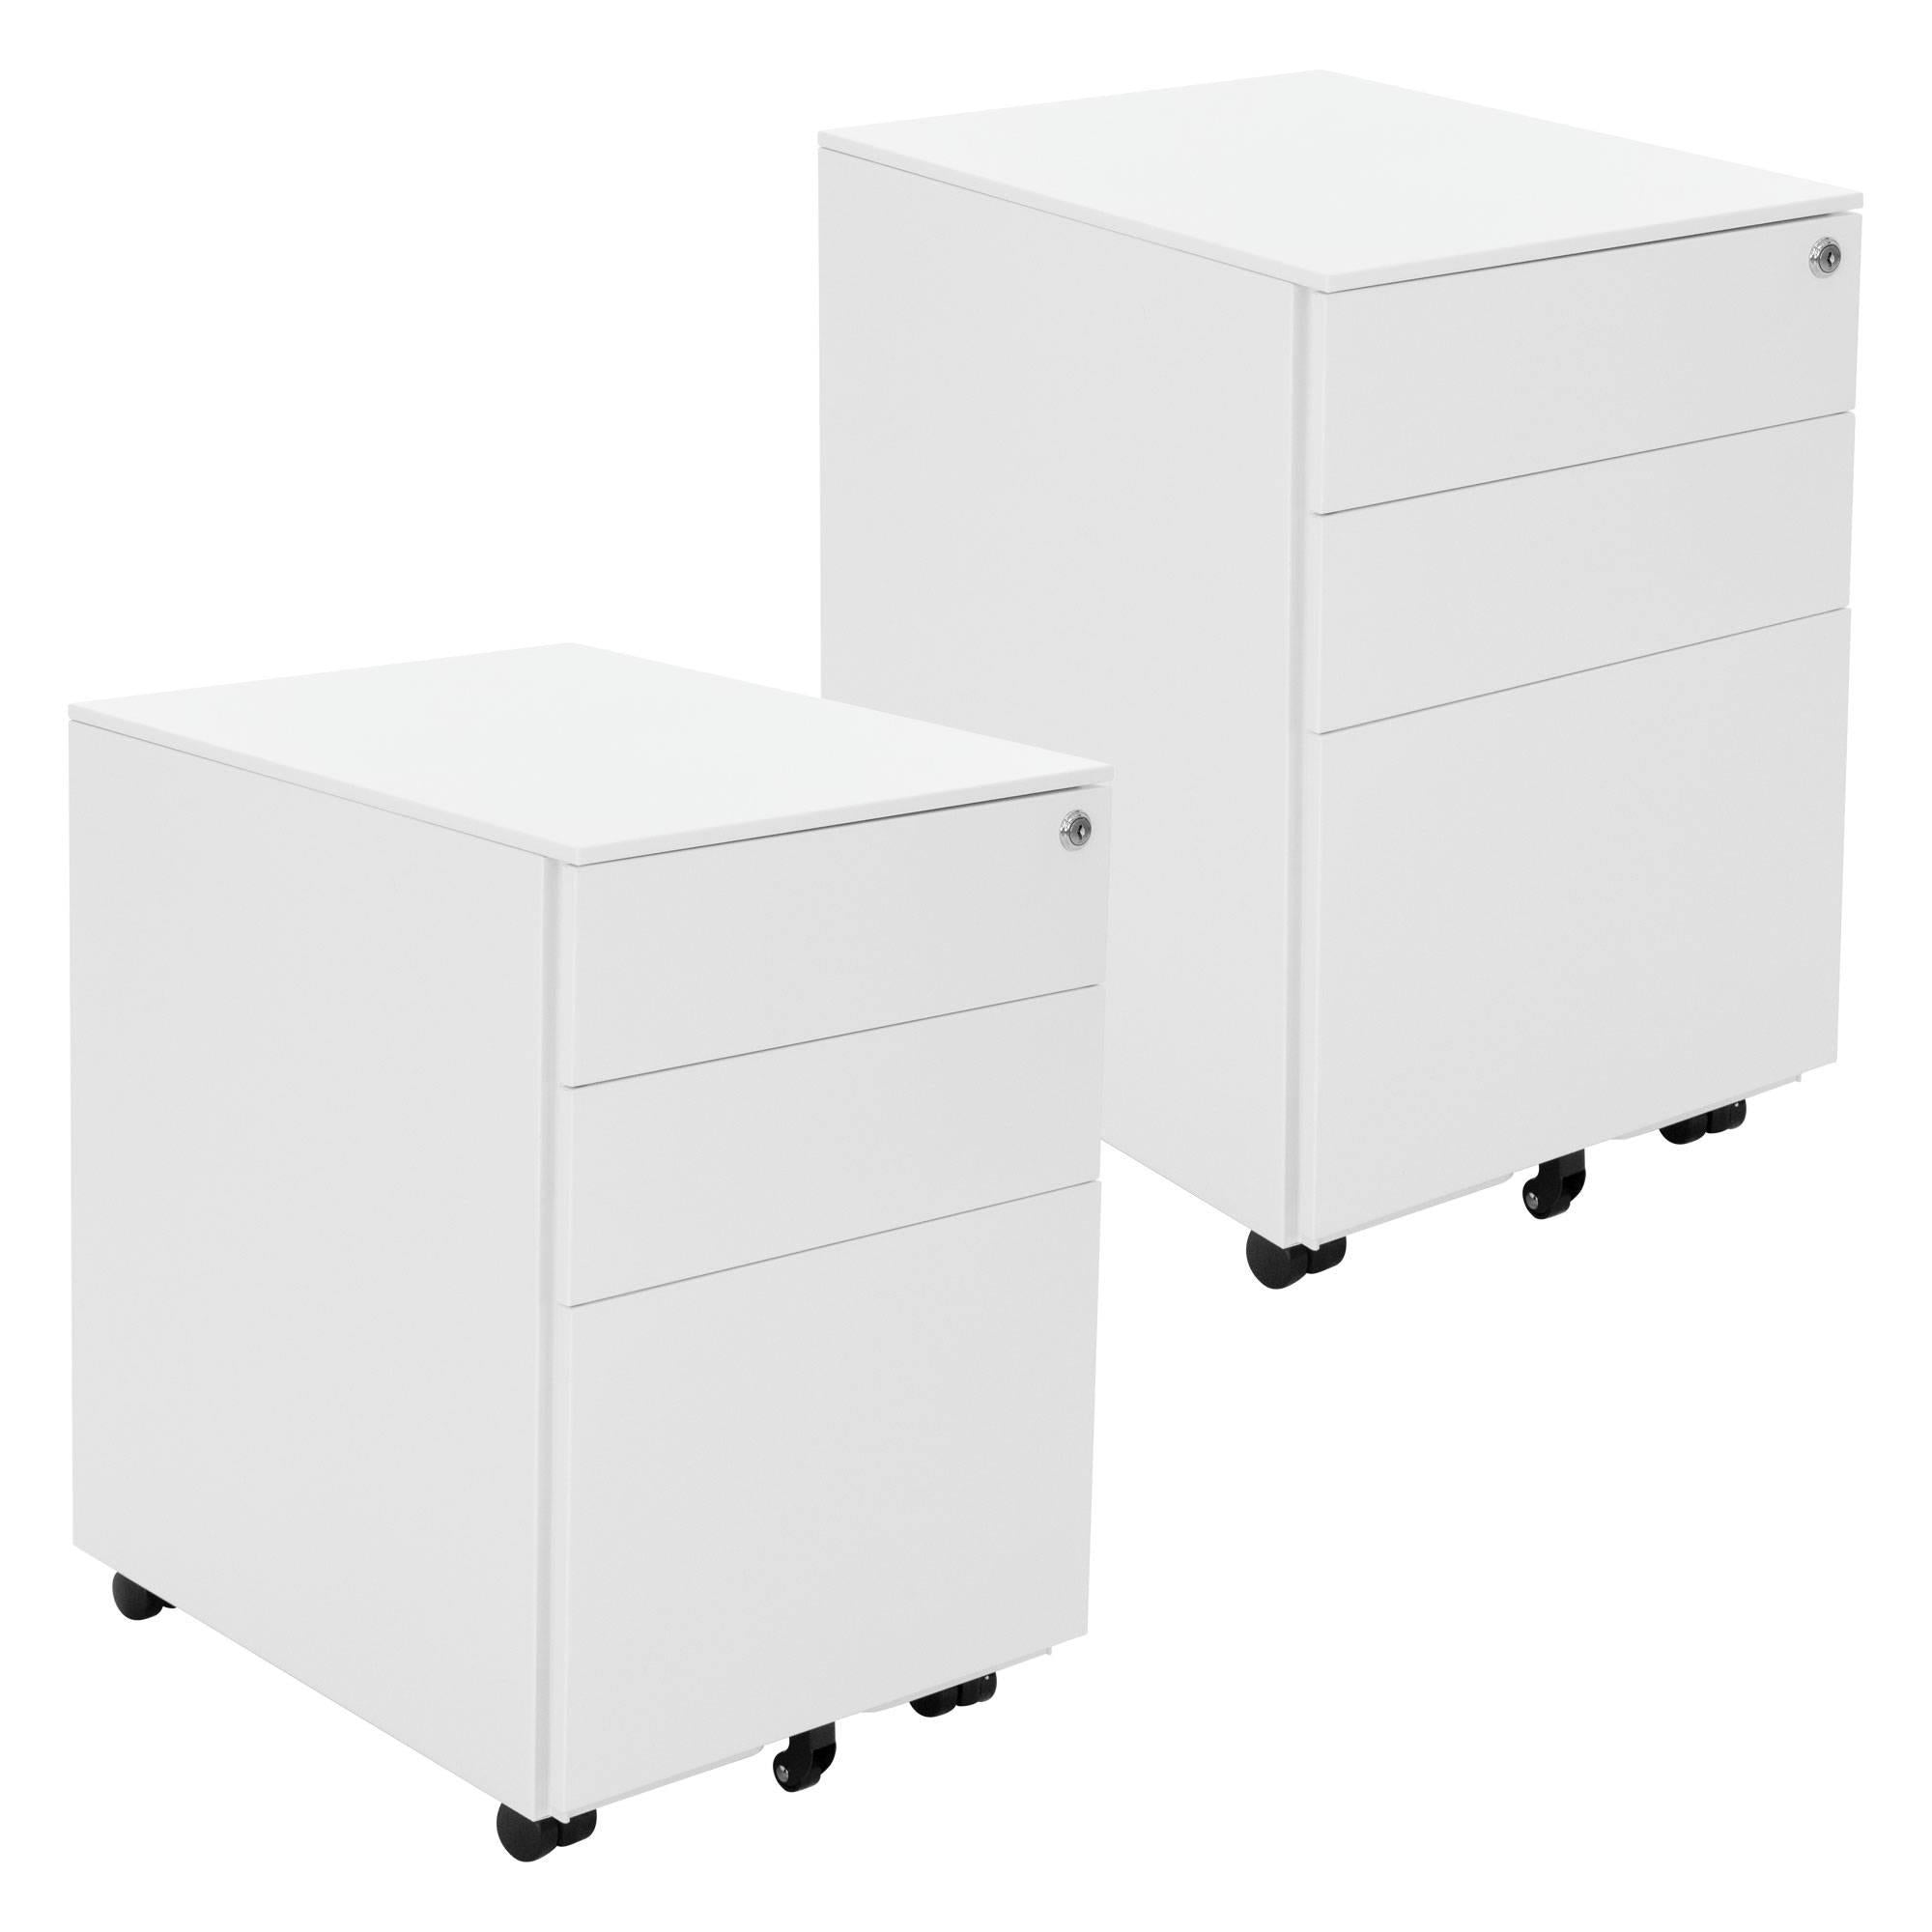 ml-design Rollcontainer mit 3 Schubladen - 2er Set, 39x50x56 cm, Weiß, aus Stahl, Mobiler Aktenschrank, Abschließbarer Büroschrank, Bürocontainer mit